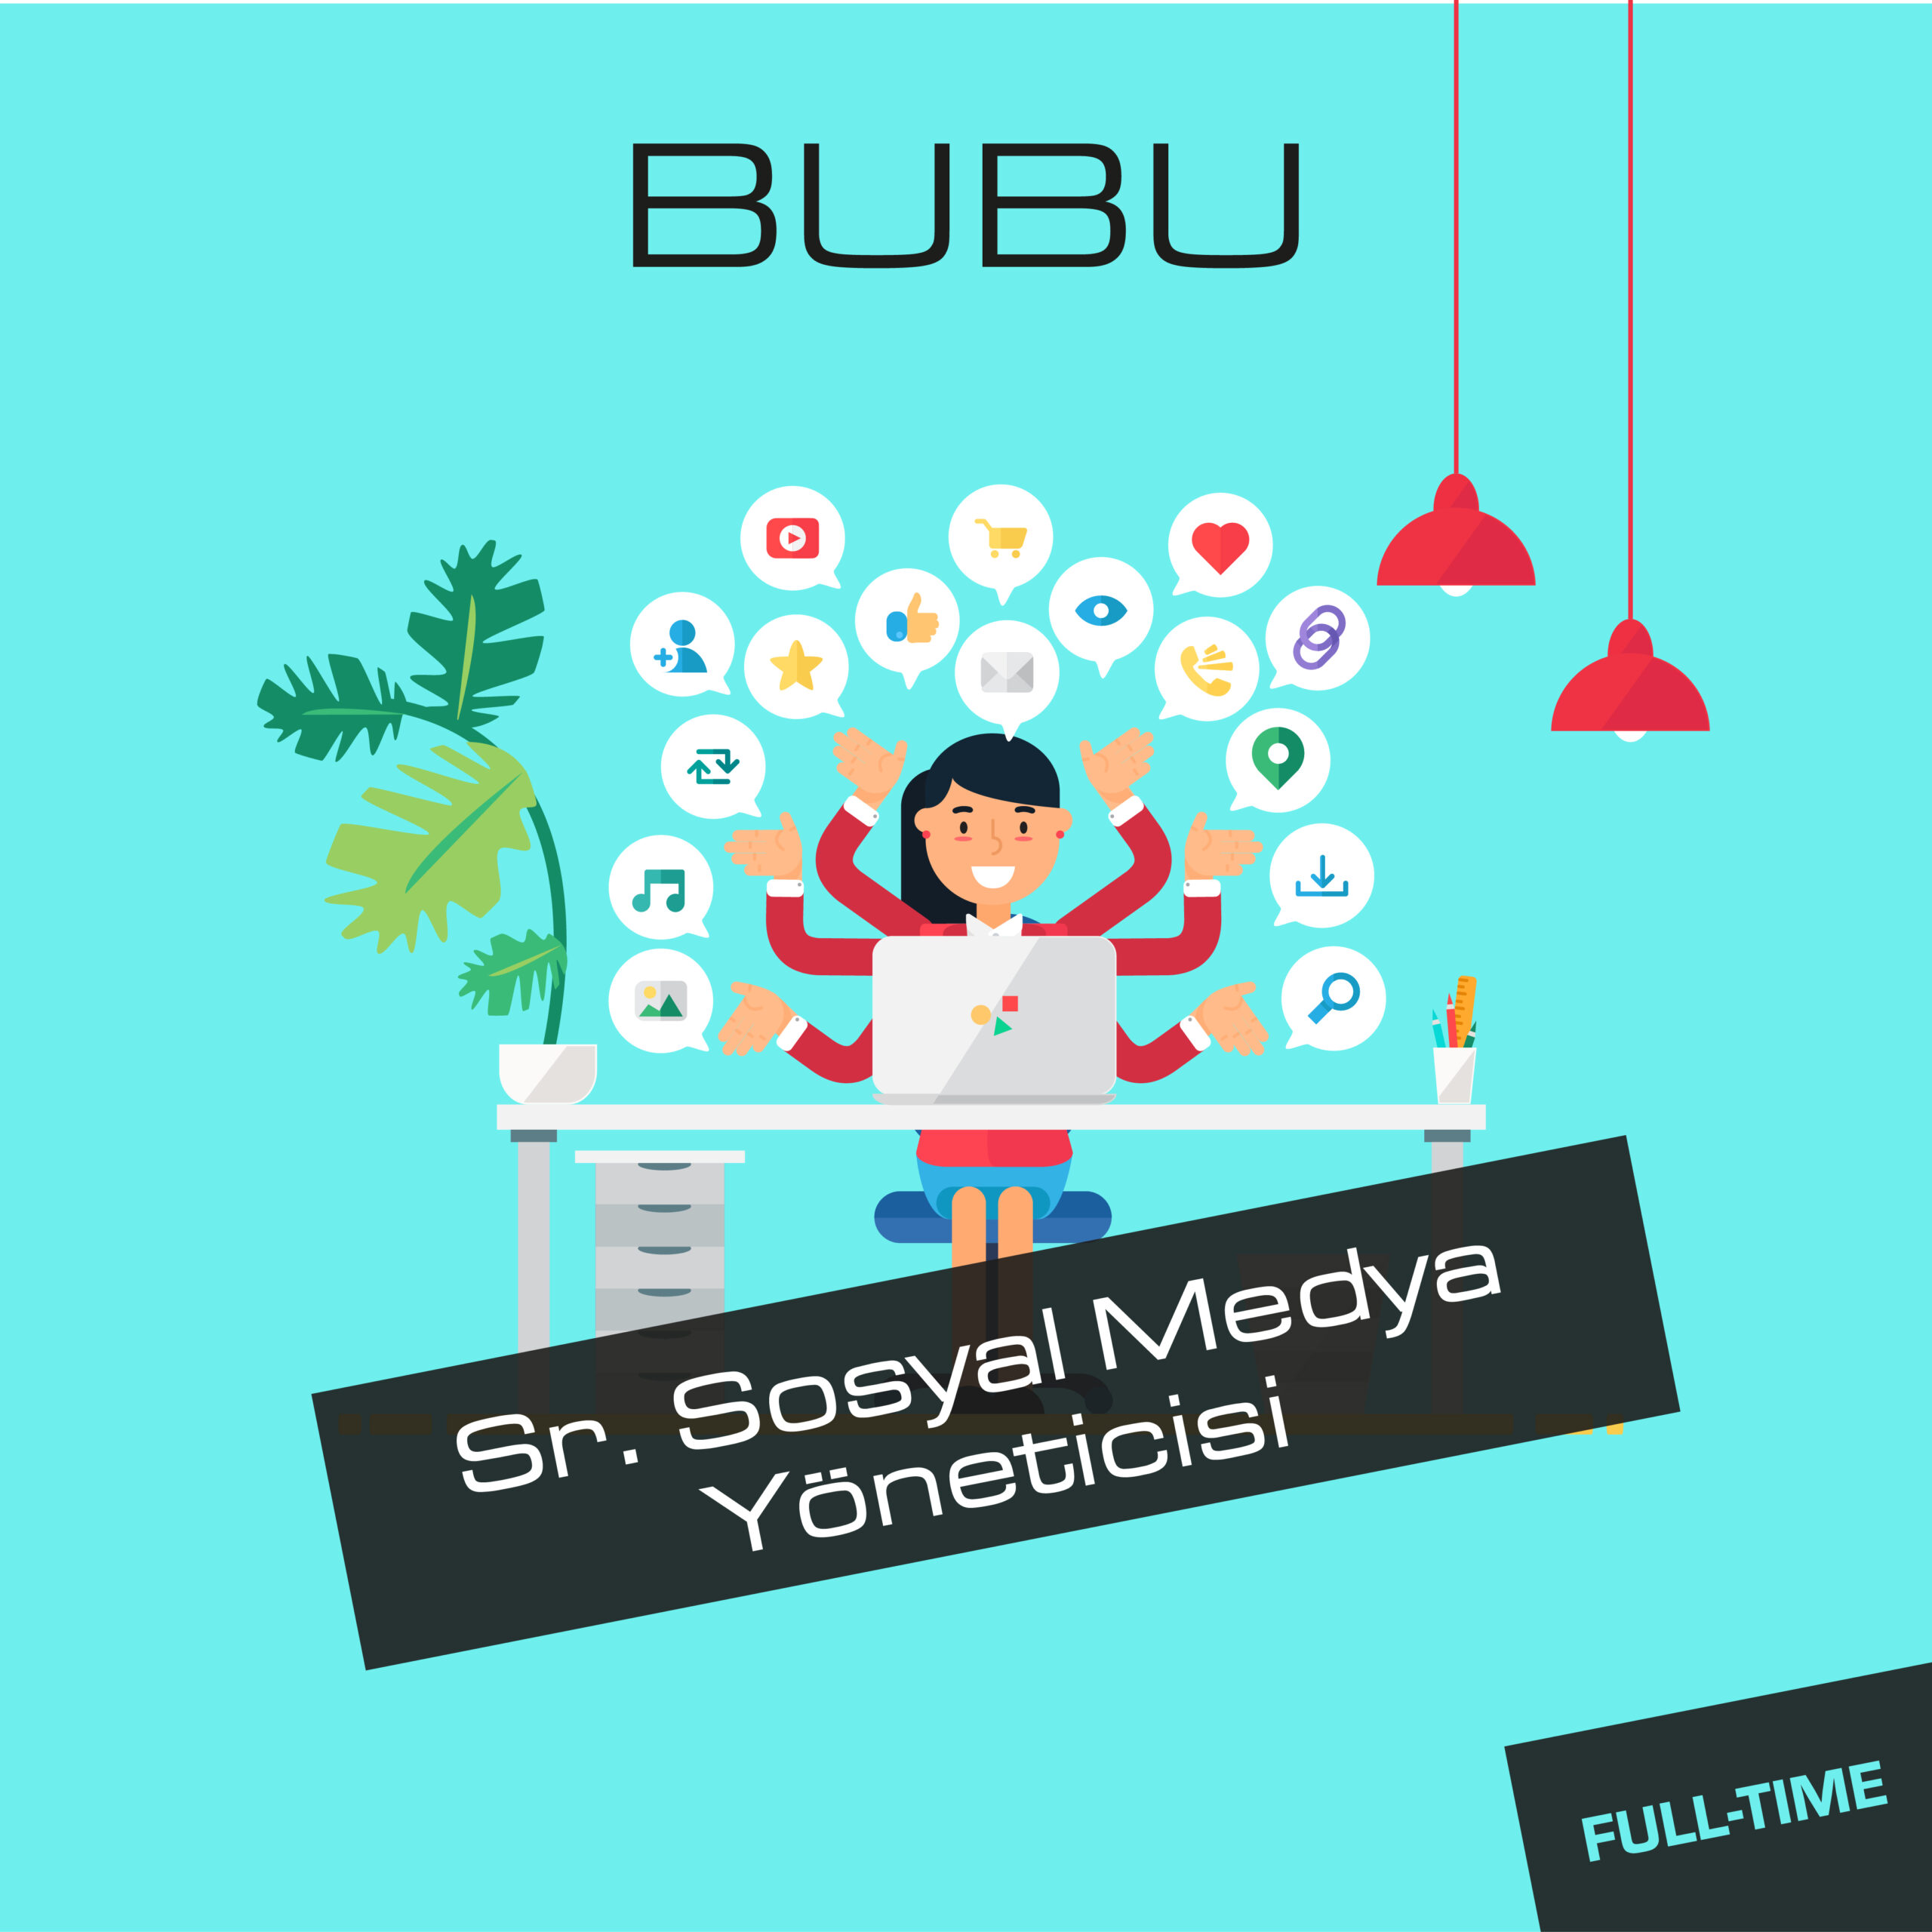 <strong>BUBU Sr. Sosyal Medya Yöneticisi arıyor!</strong>